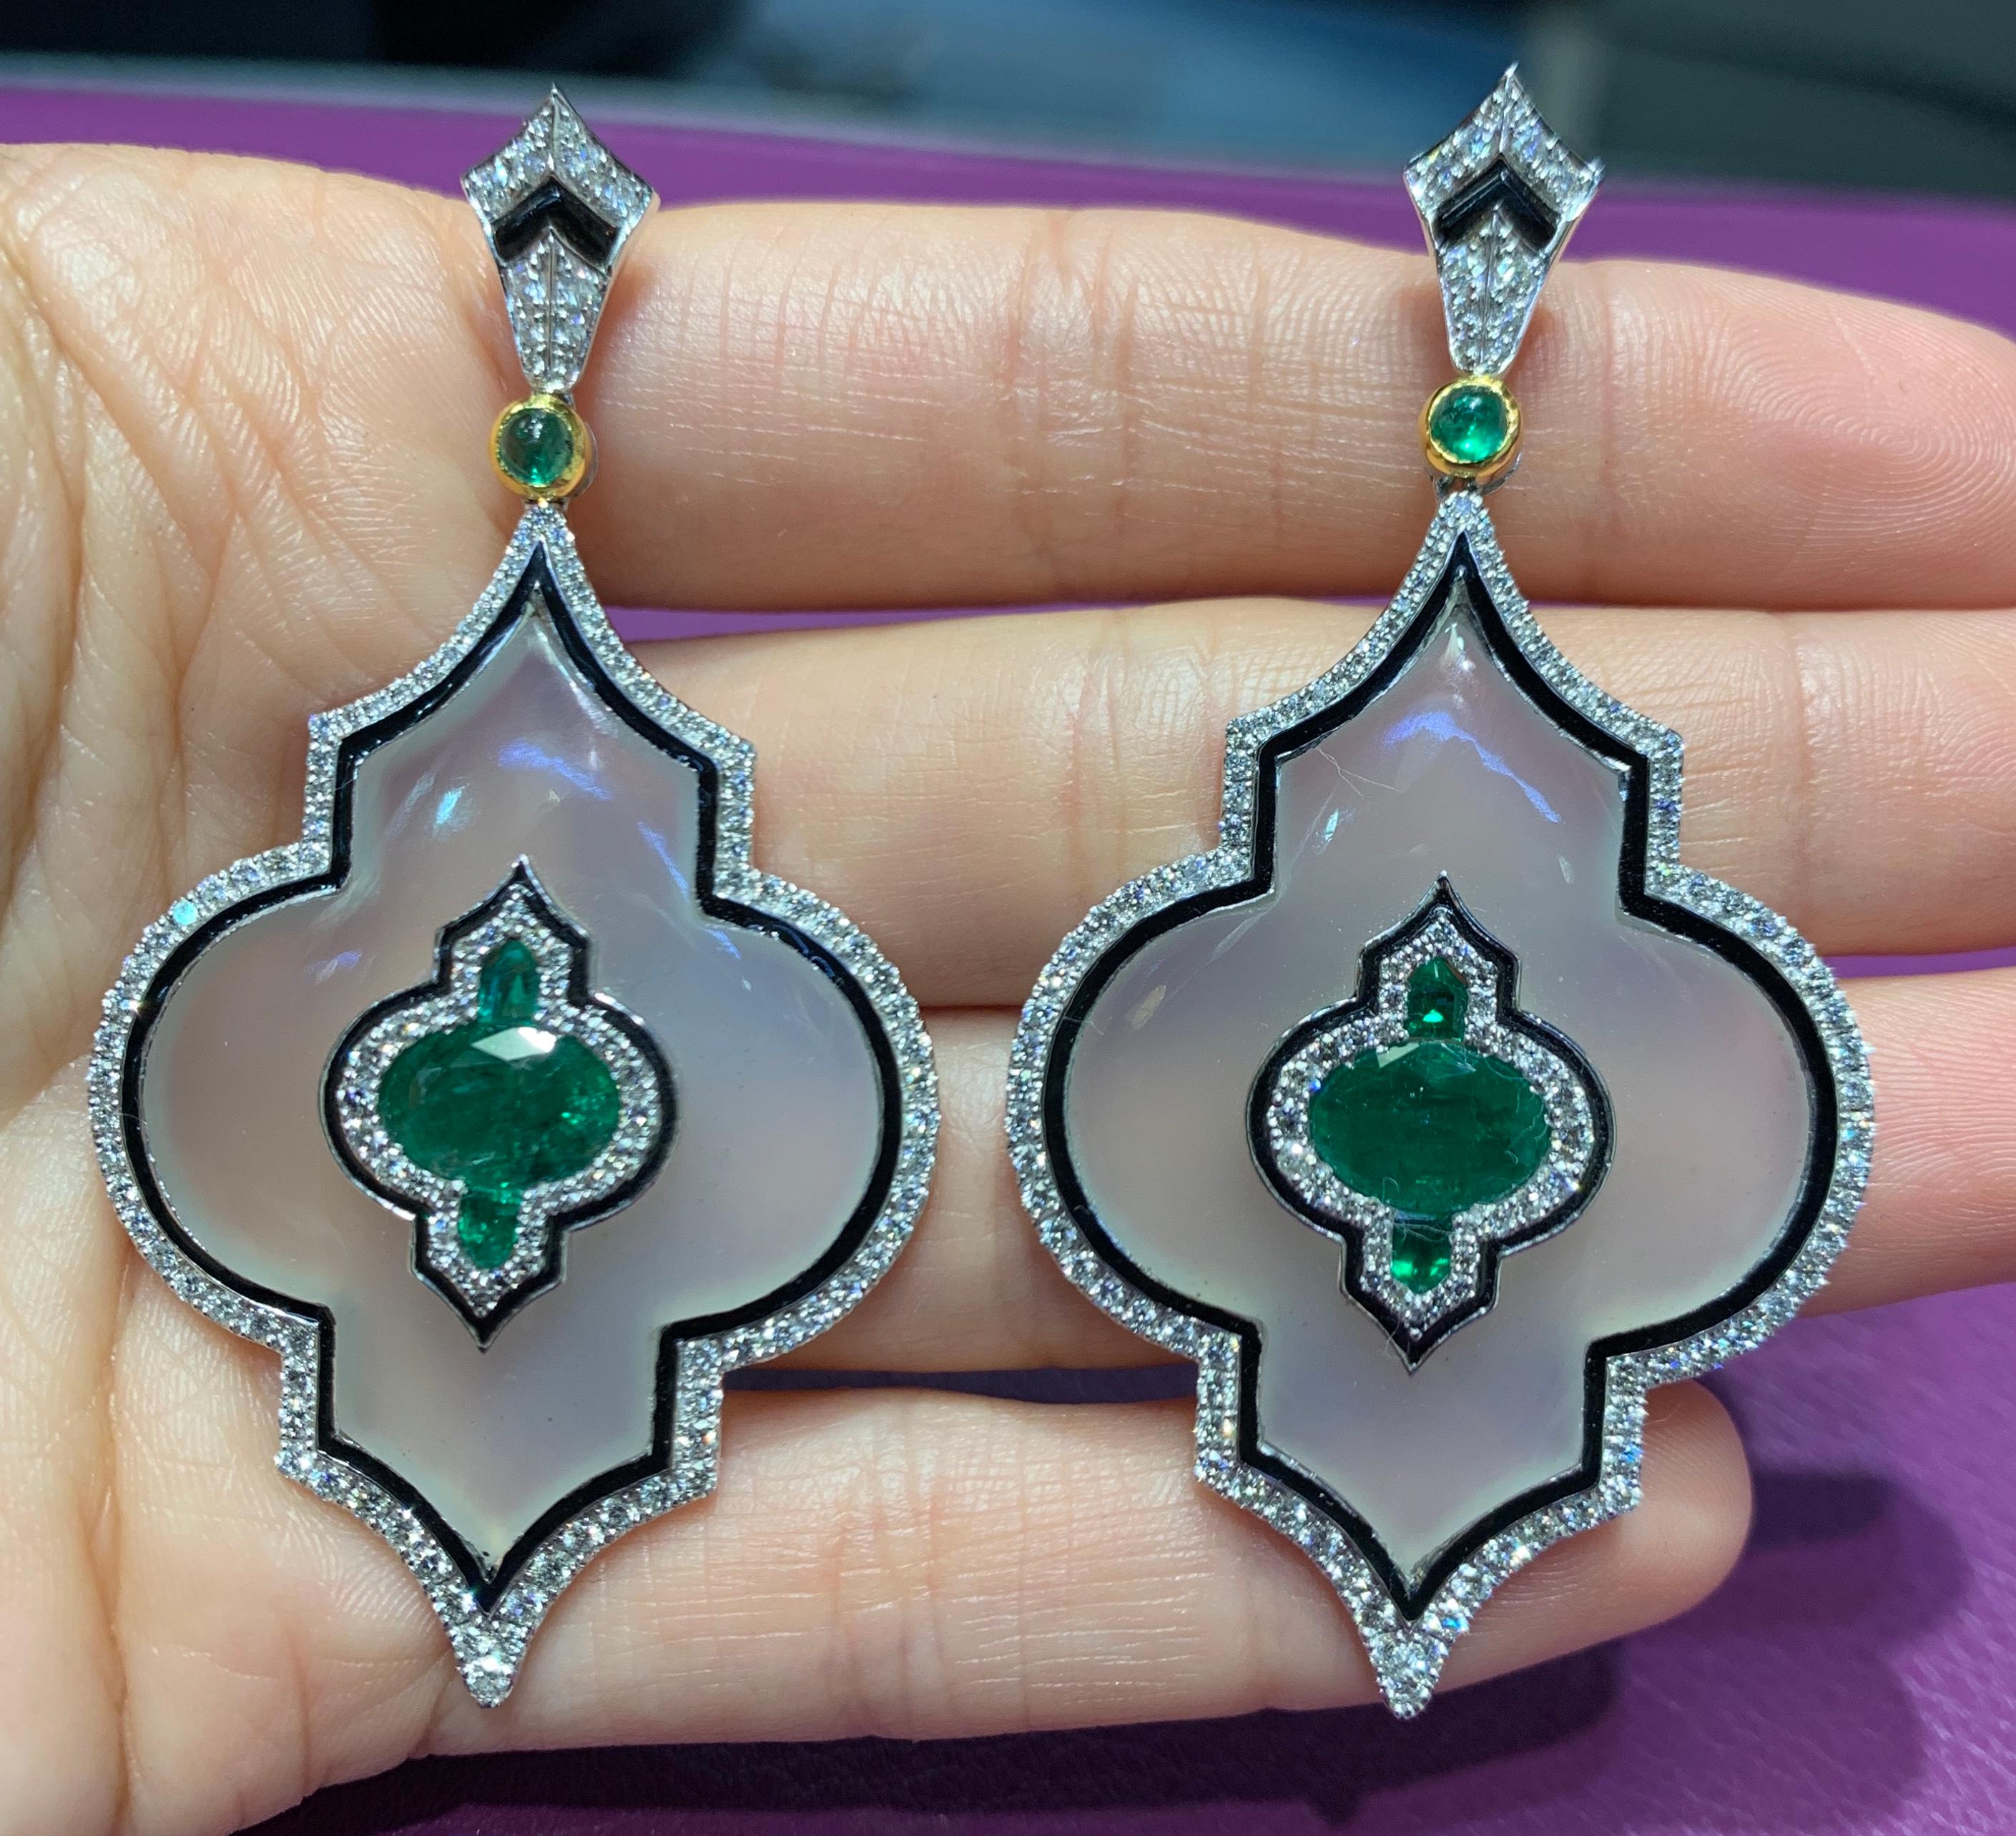 Agate, Emerald & Diamond Chandelier Earrings, 18K White Gold
Emerald Weight: 4.11 Cts
Diamond Weight: 2.38 Cts 
Back Type: Push Back
Measurements: 2.5